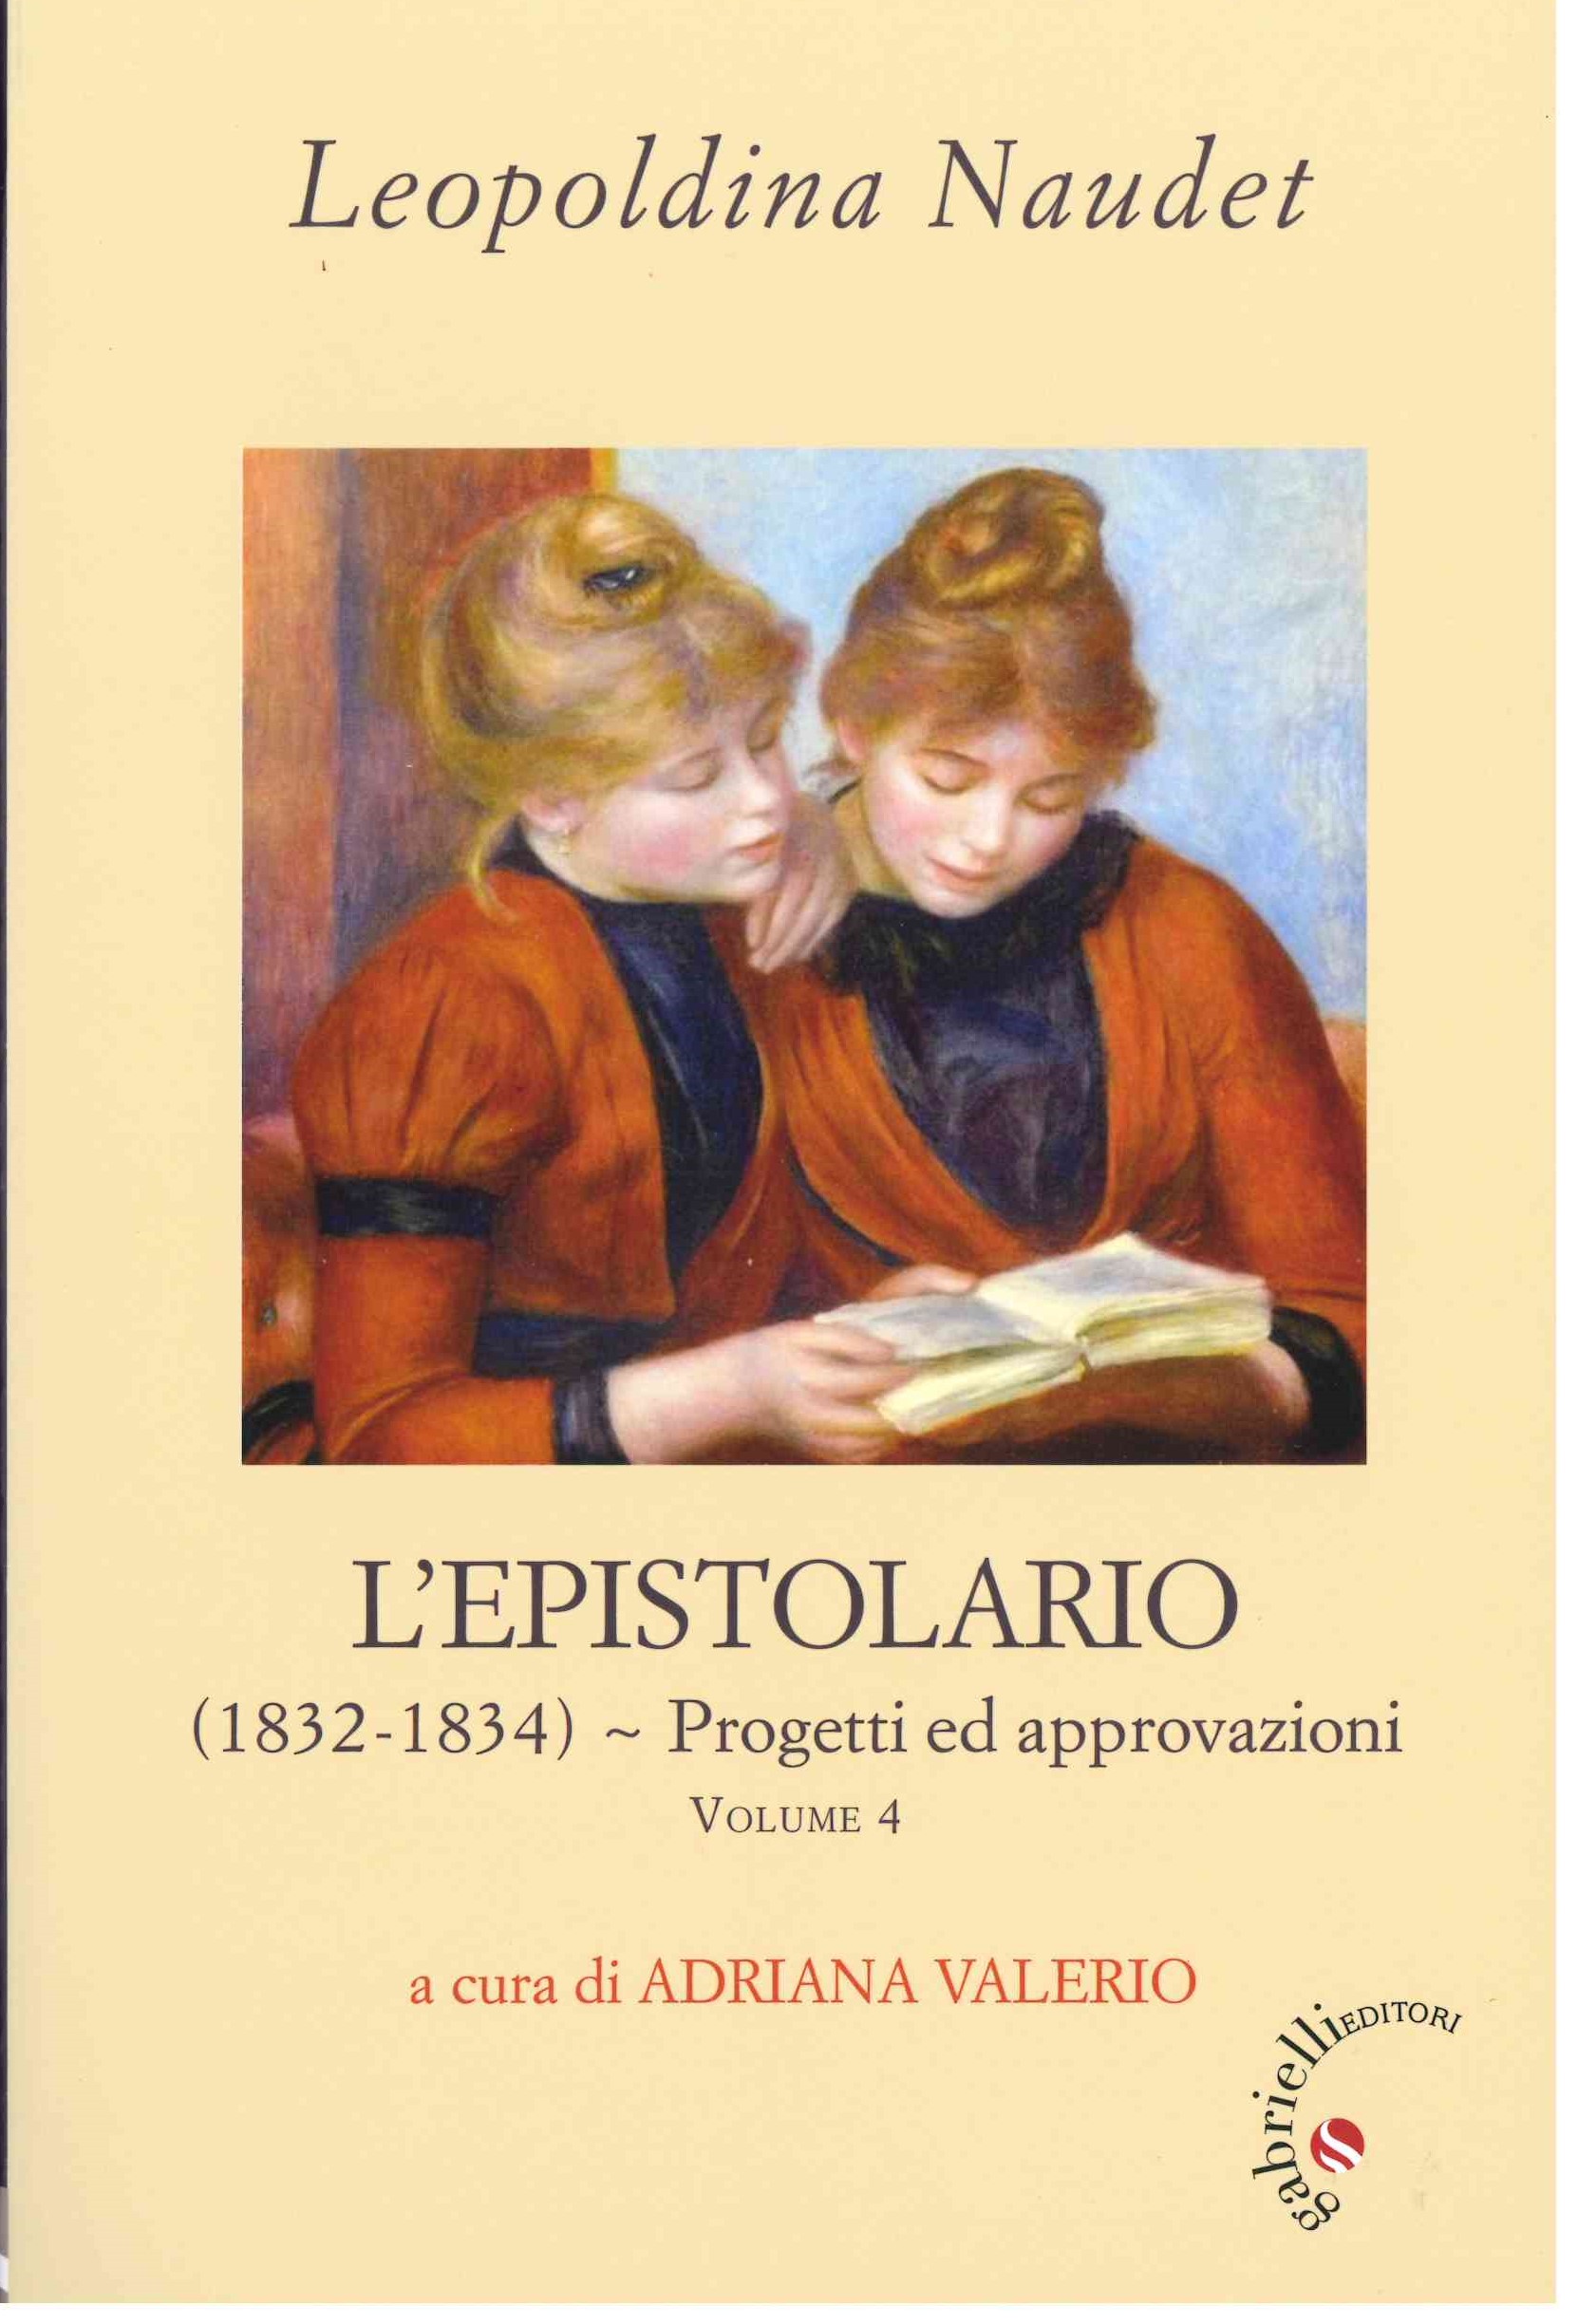 LEOPOLDINA NAUDET, L'EPISTOLARIO a cura di ADRIANA VALERIO Volume 4